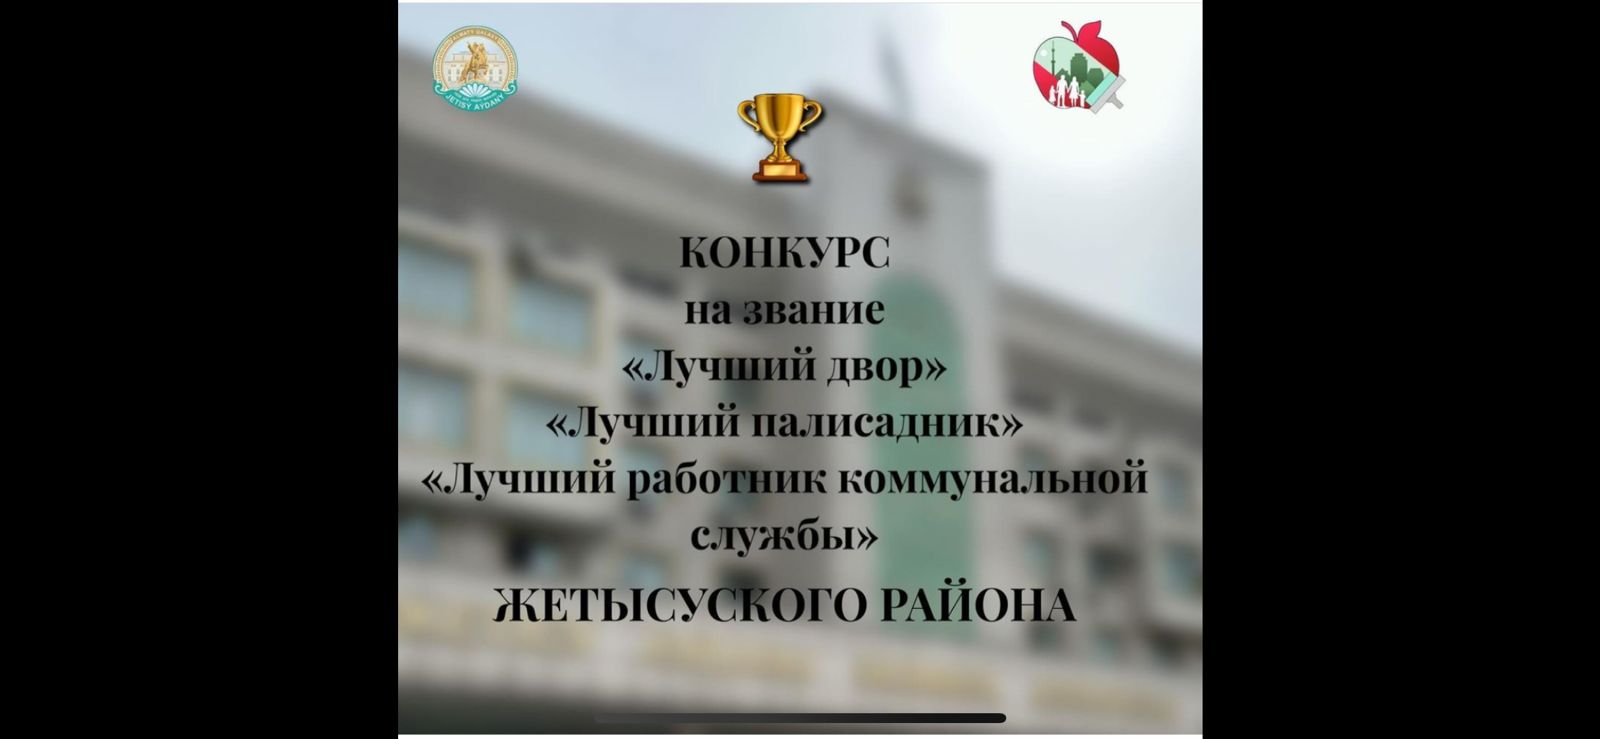 Уважаемые жители Жетысуского района города Алматы! Приглашаем вас принять участие в конкурсе на звание “Лучший двор”, “Лучший палисадник”, “Лучший работник коммунальной службы”.